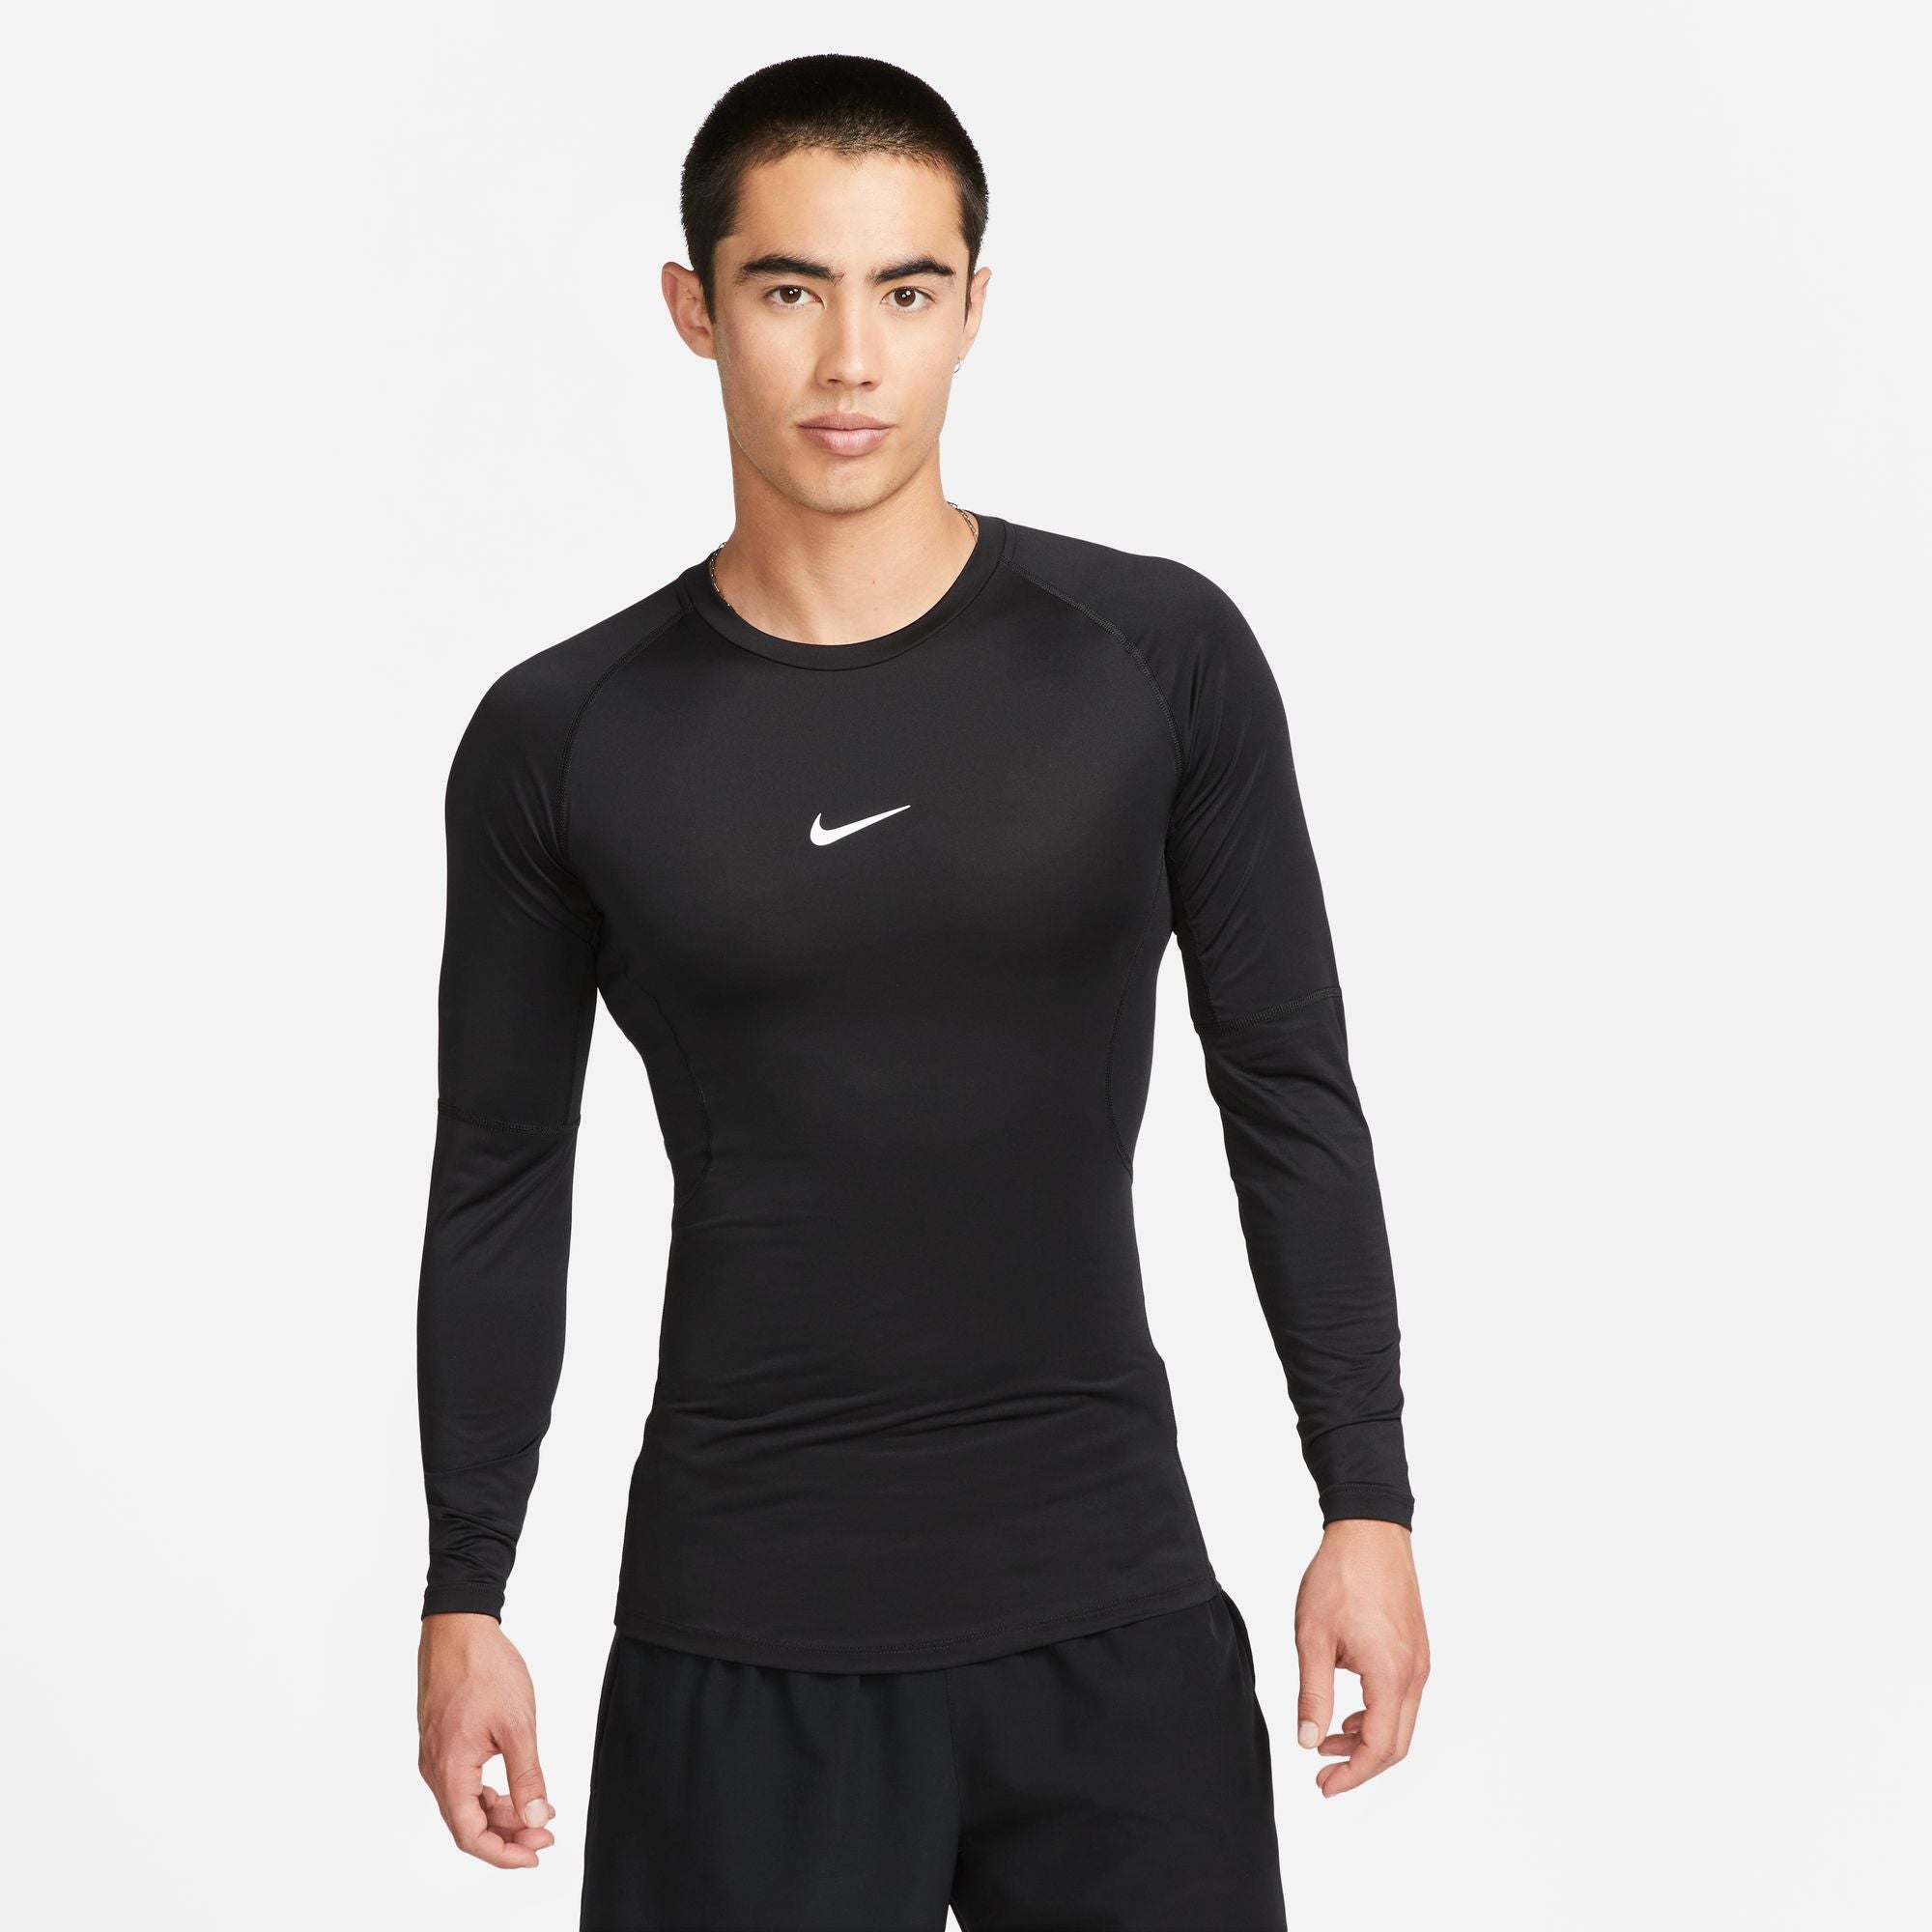 Mens Nike Yoga Dri Fit Training T-Shirt Size L Black DM7825 010 Retail:  $50.00